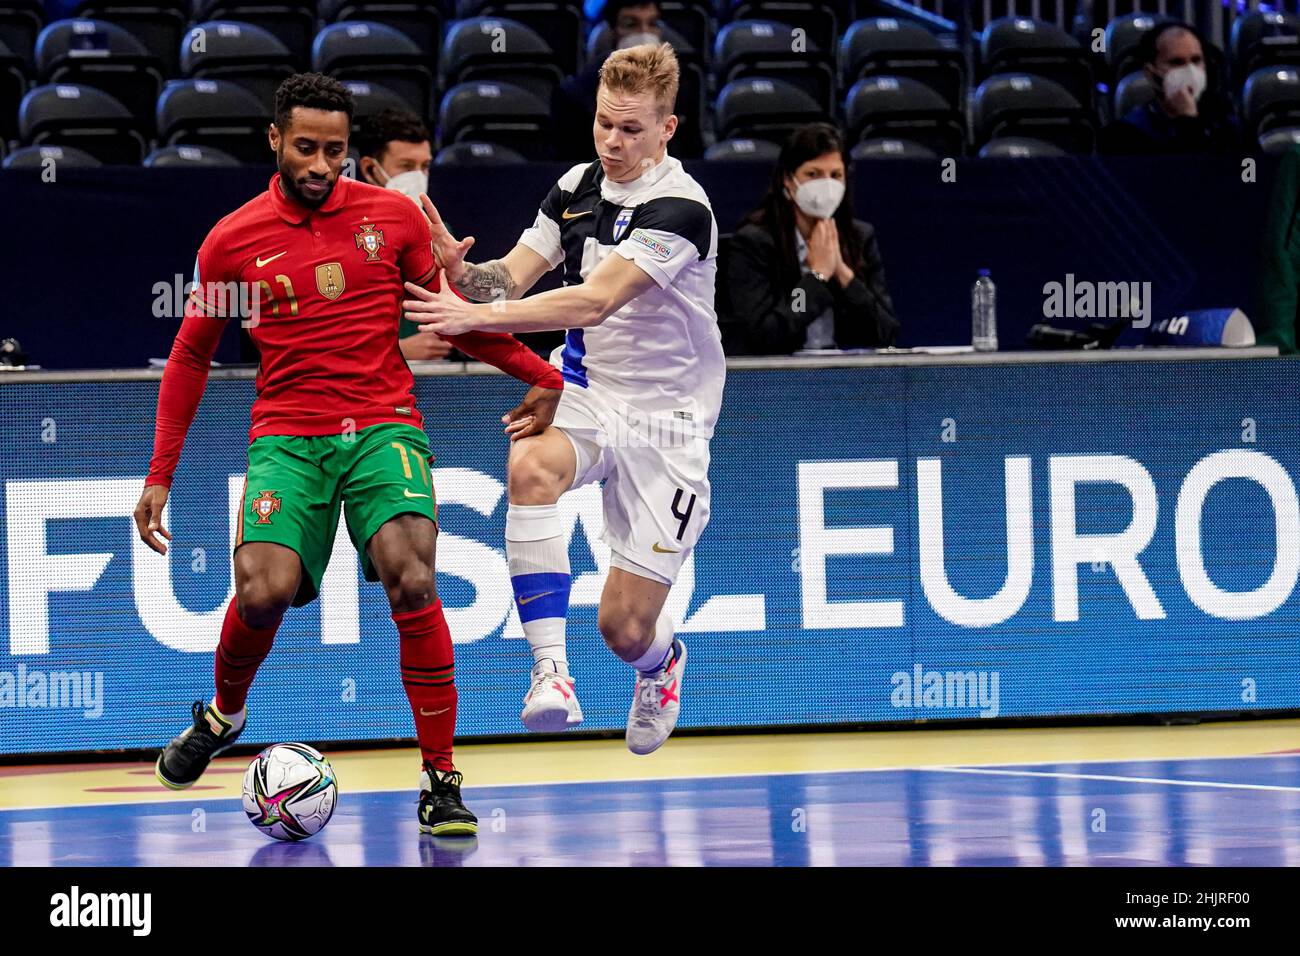 Futsal: Erick e Pany Varela candidatos a melhor jogador do mundo